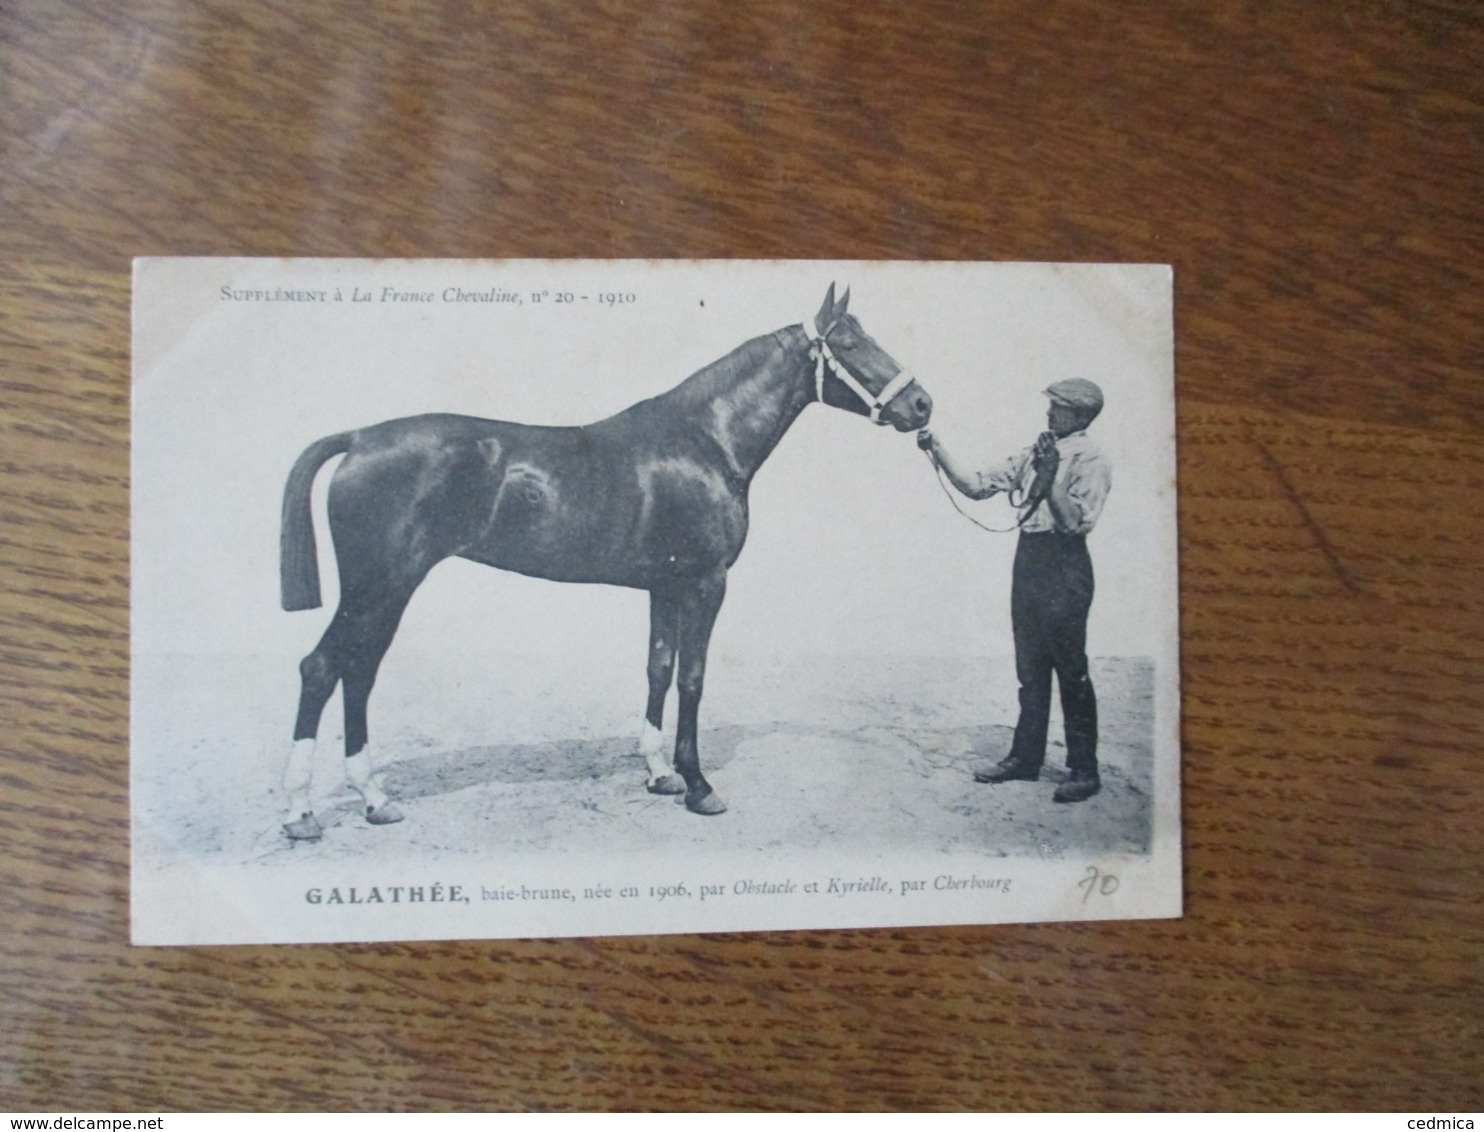 GALATHEE,BAI-BRUNE,NEE EN 1906,PAR OBSTACLE  ET KYRIELLE,PAR CHERBOURG, SUPPLEMENT A LA FRANCE CHEVALINE N°20-1910 - Pferde